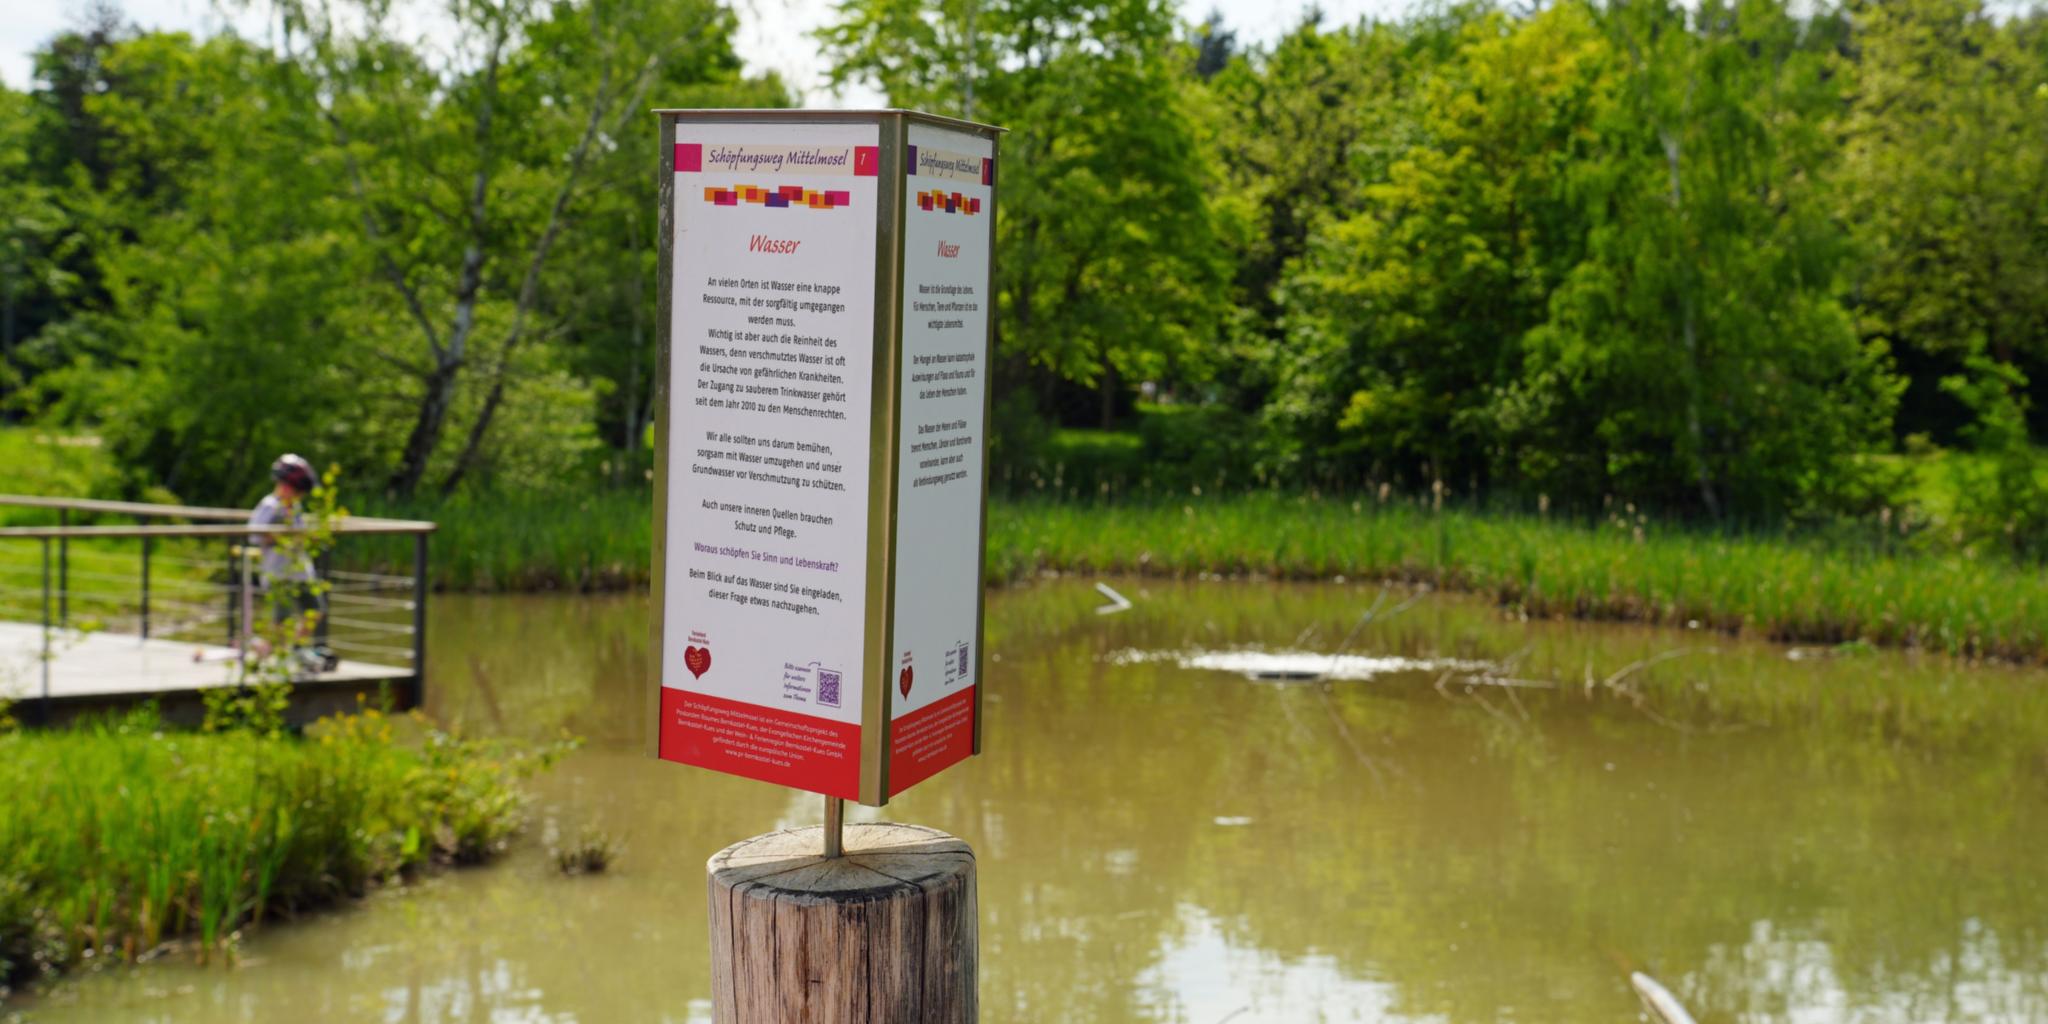 Die erste Station am Teich des neugestalteten Kurparks widmet sich dem Thema Wasser